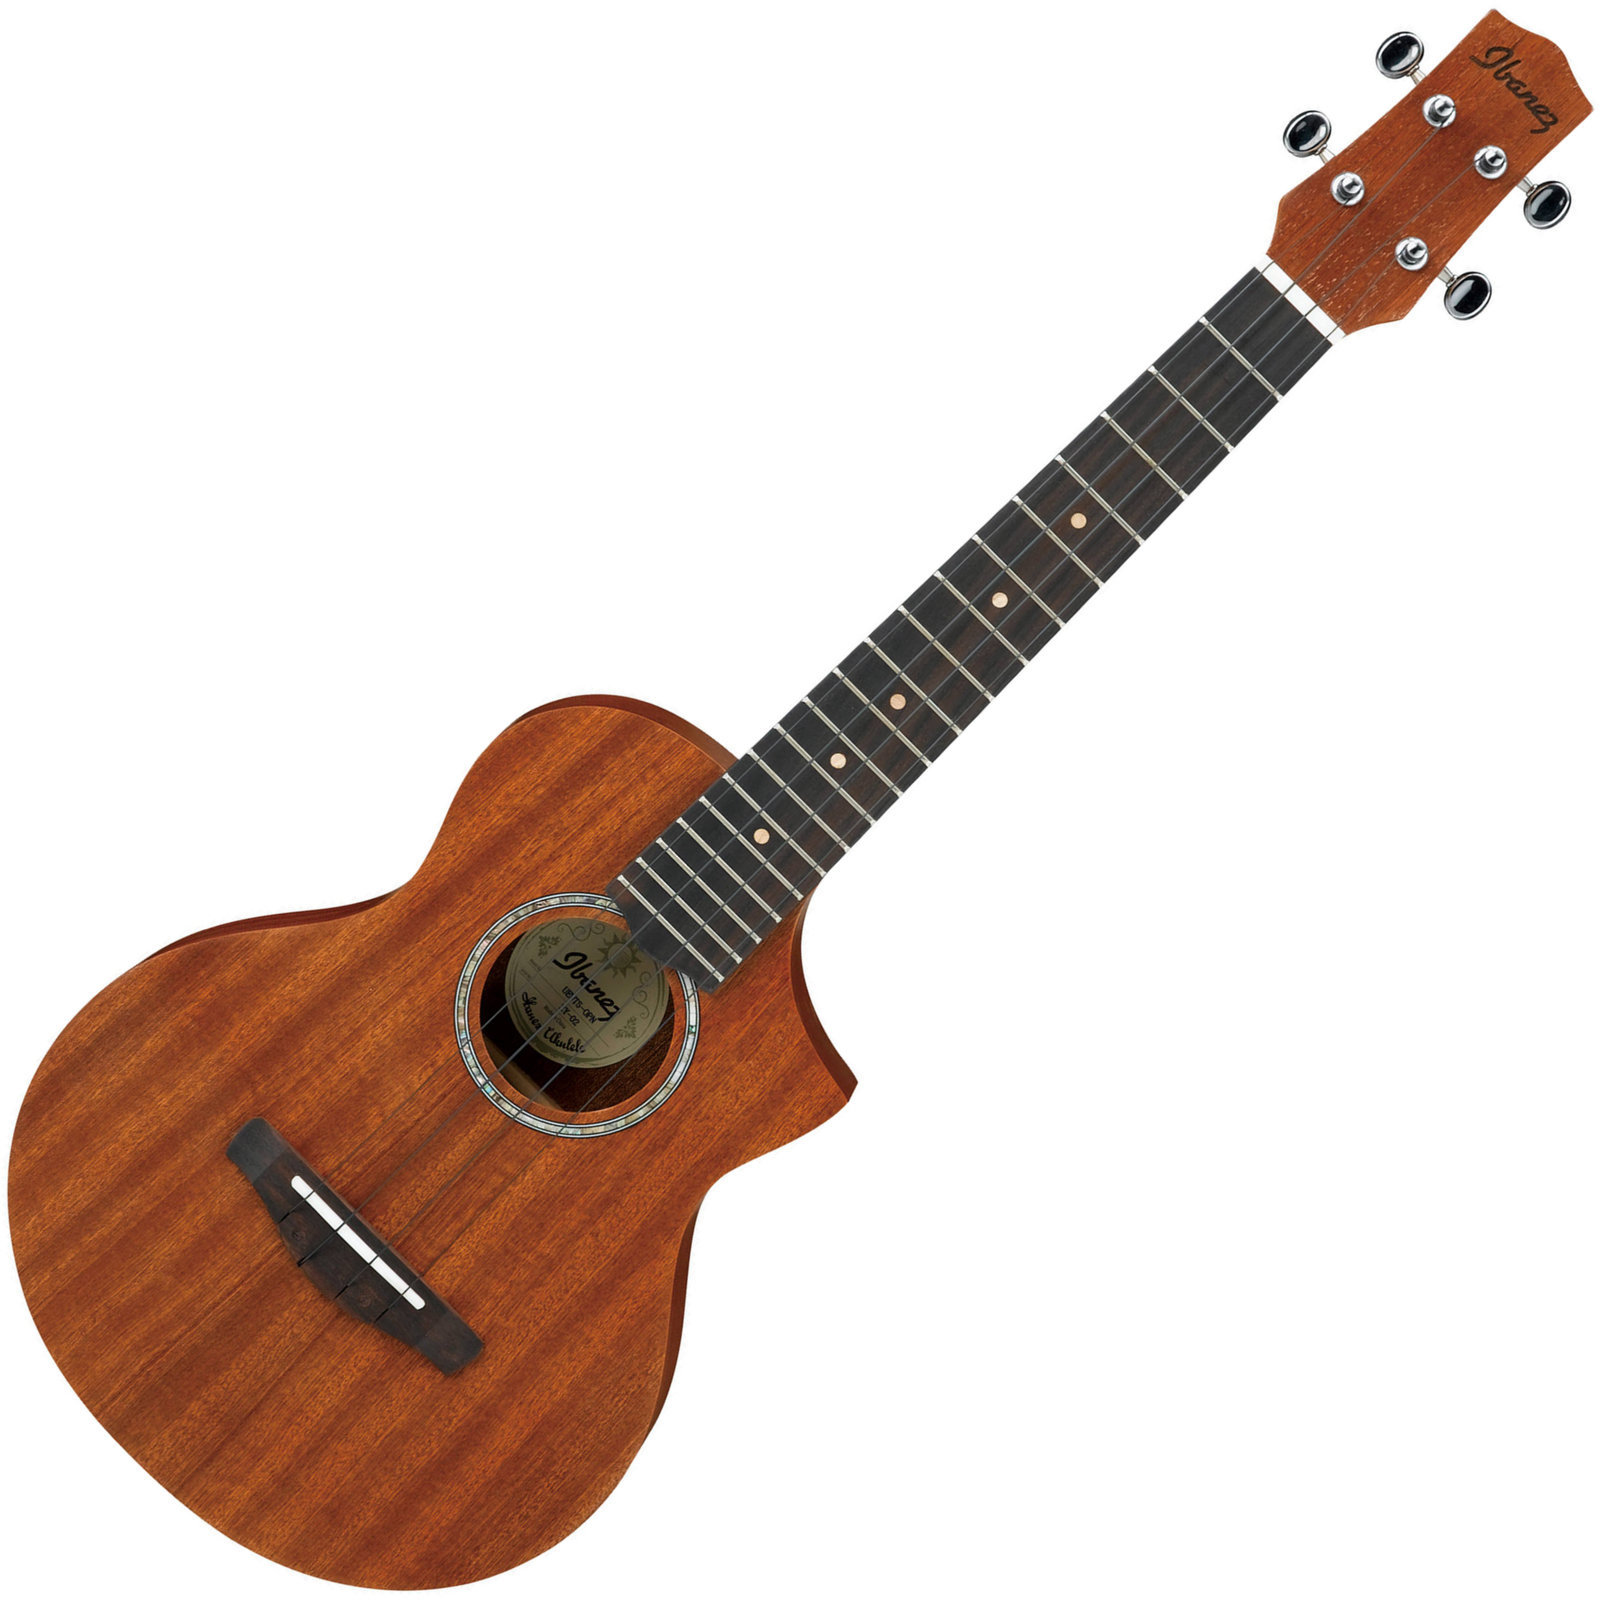 Tenori-ukulele Ibanez UEWT5 Open Pore Tenori-ukulele Natural